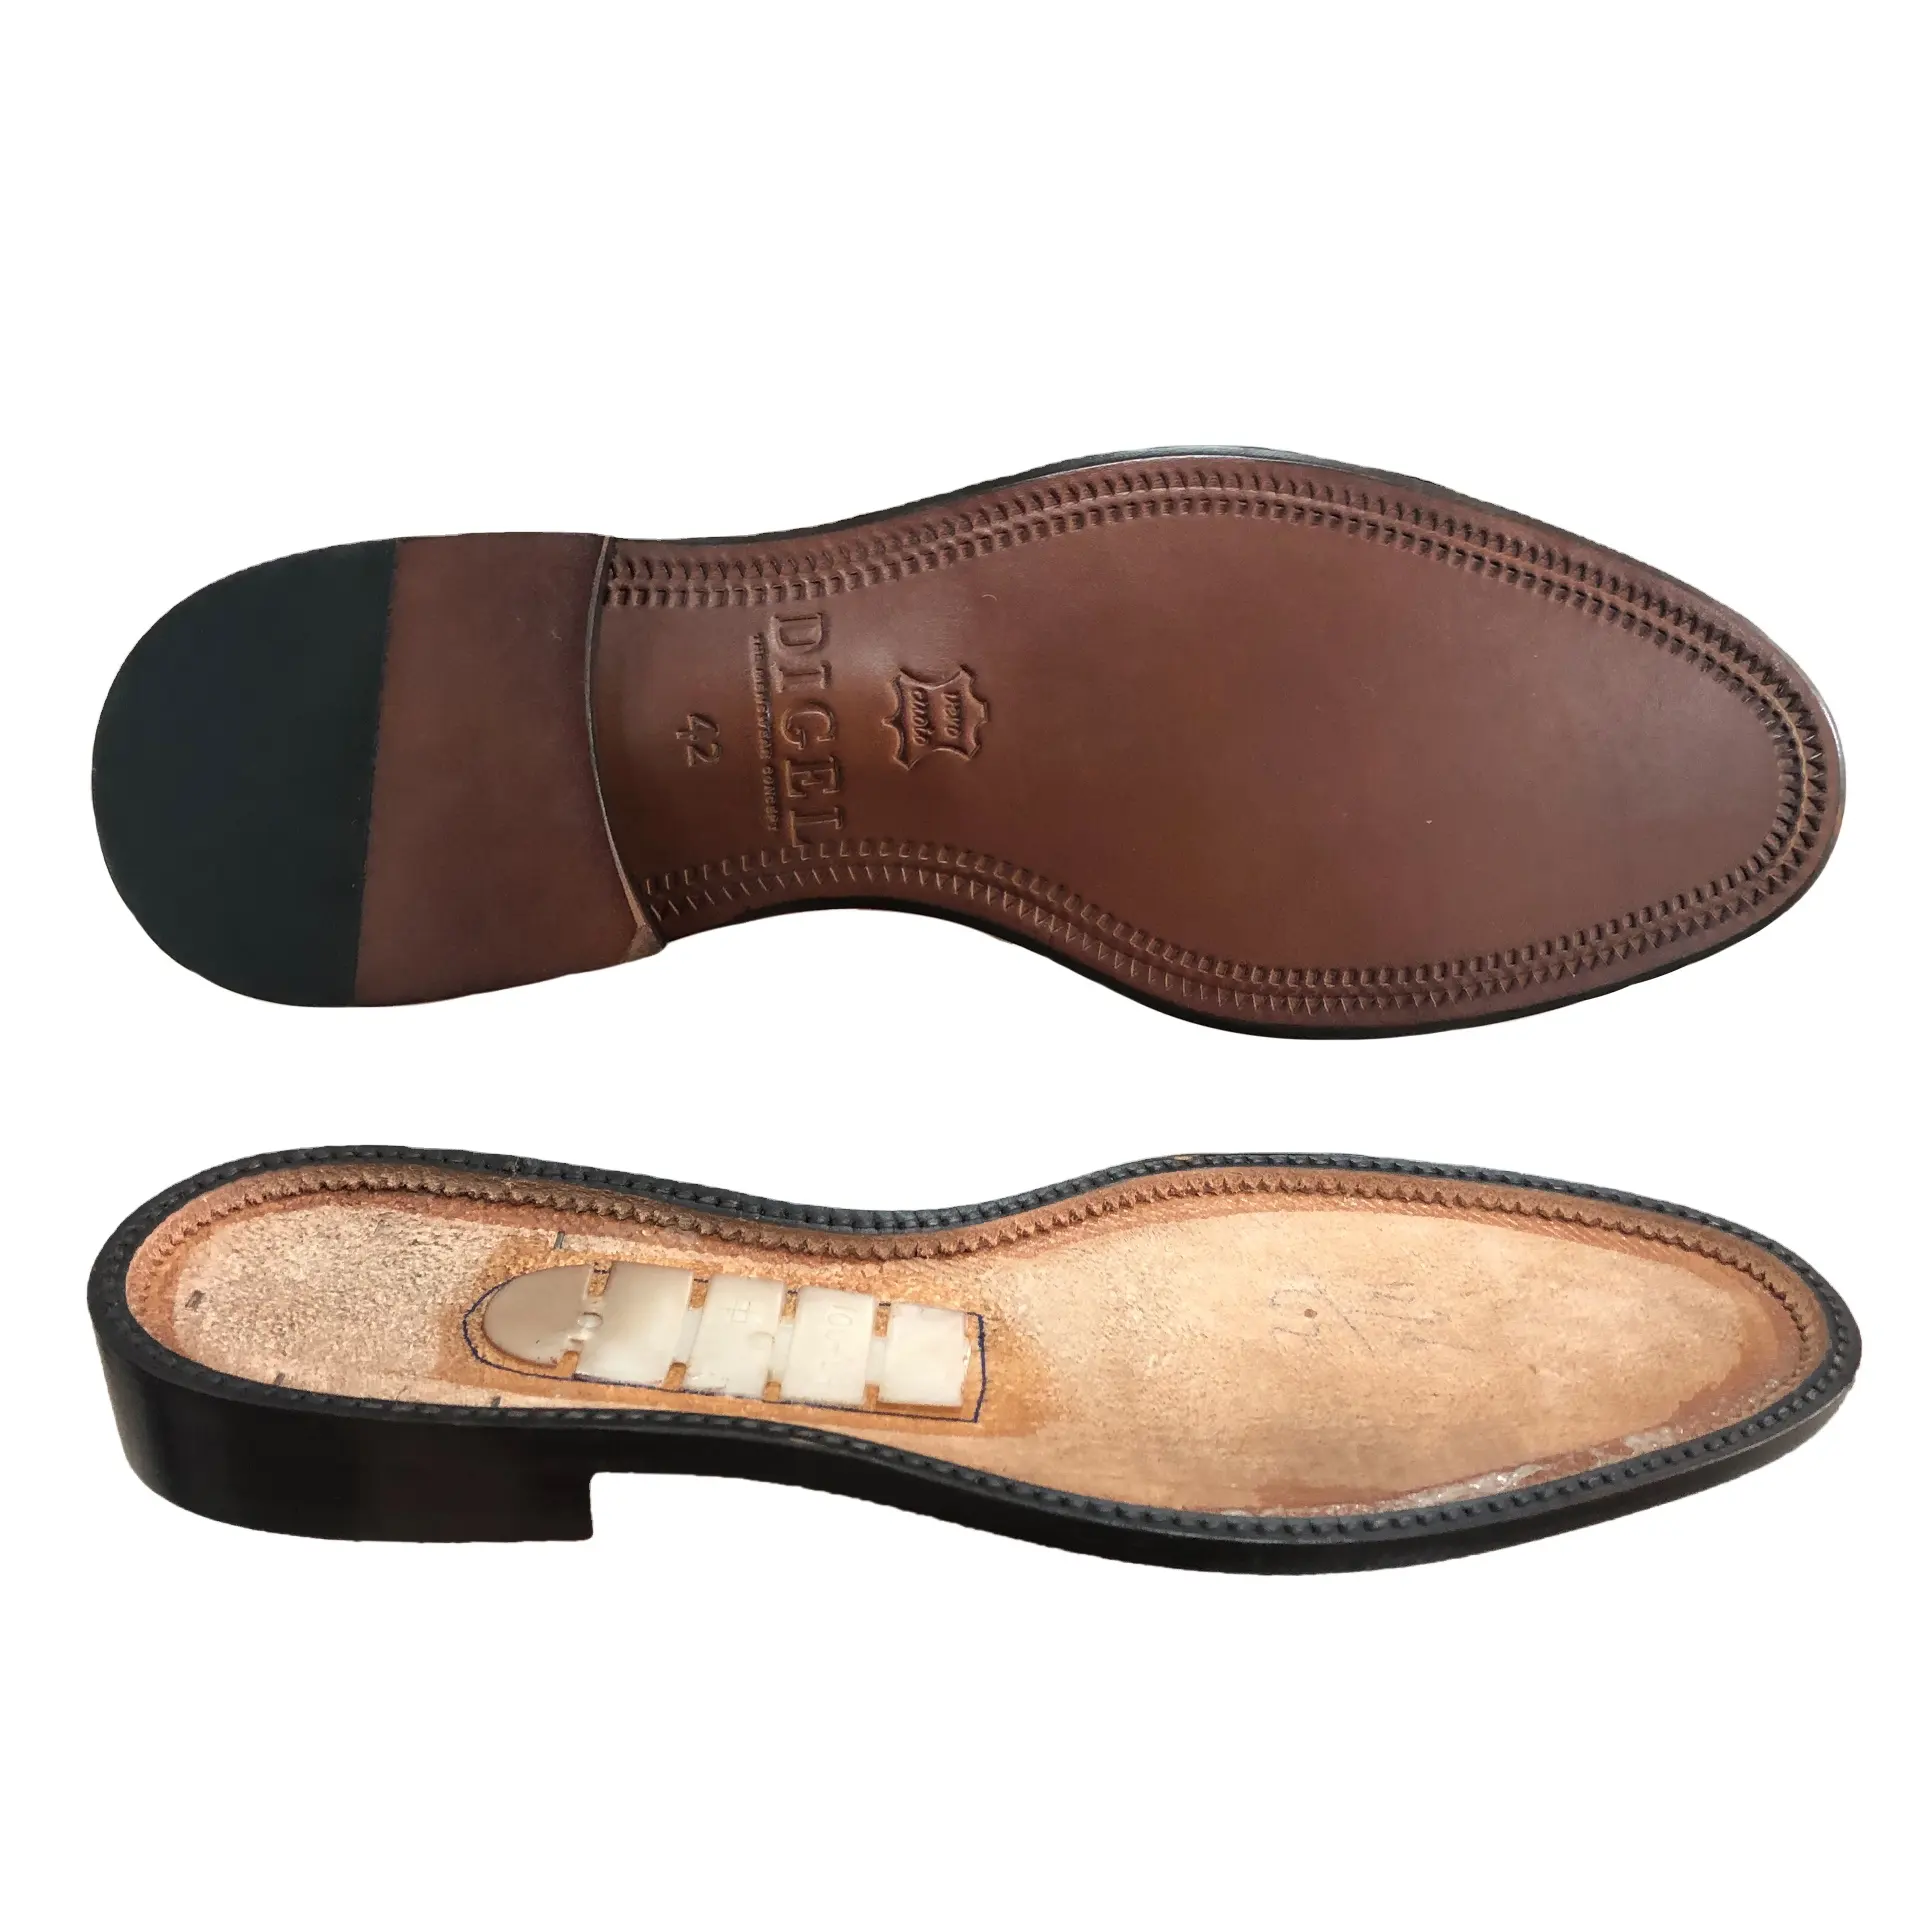 Factoey Make Price Zapatos formales Suela de zapato de vestir de caballero Suela de goma formal para hombres para hacer zapatos de cuero